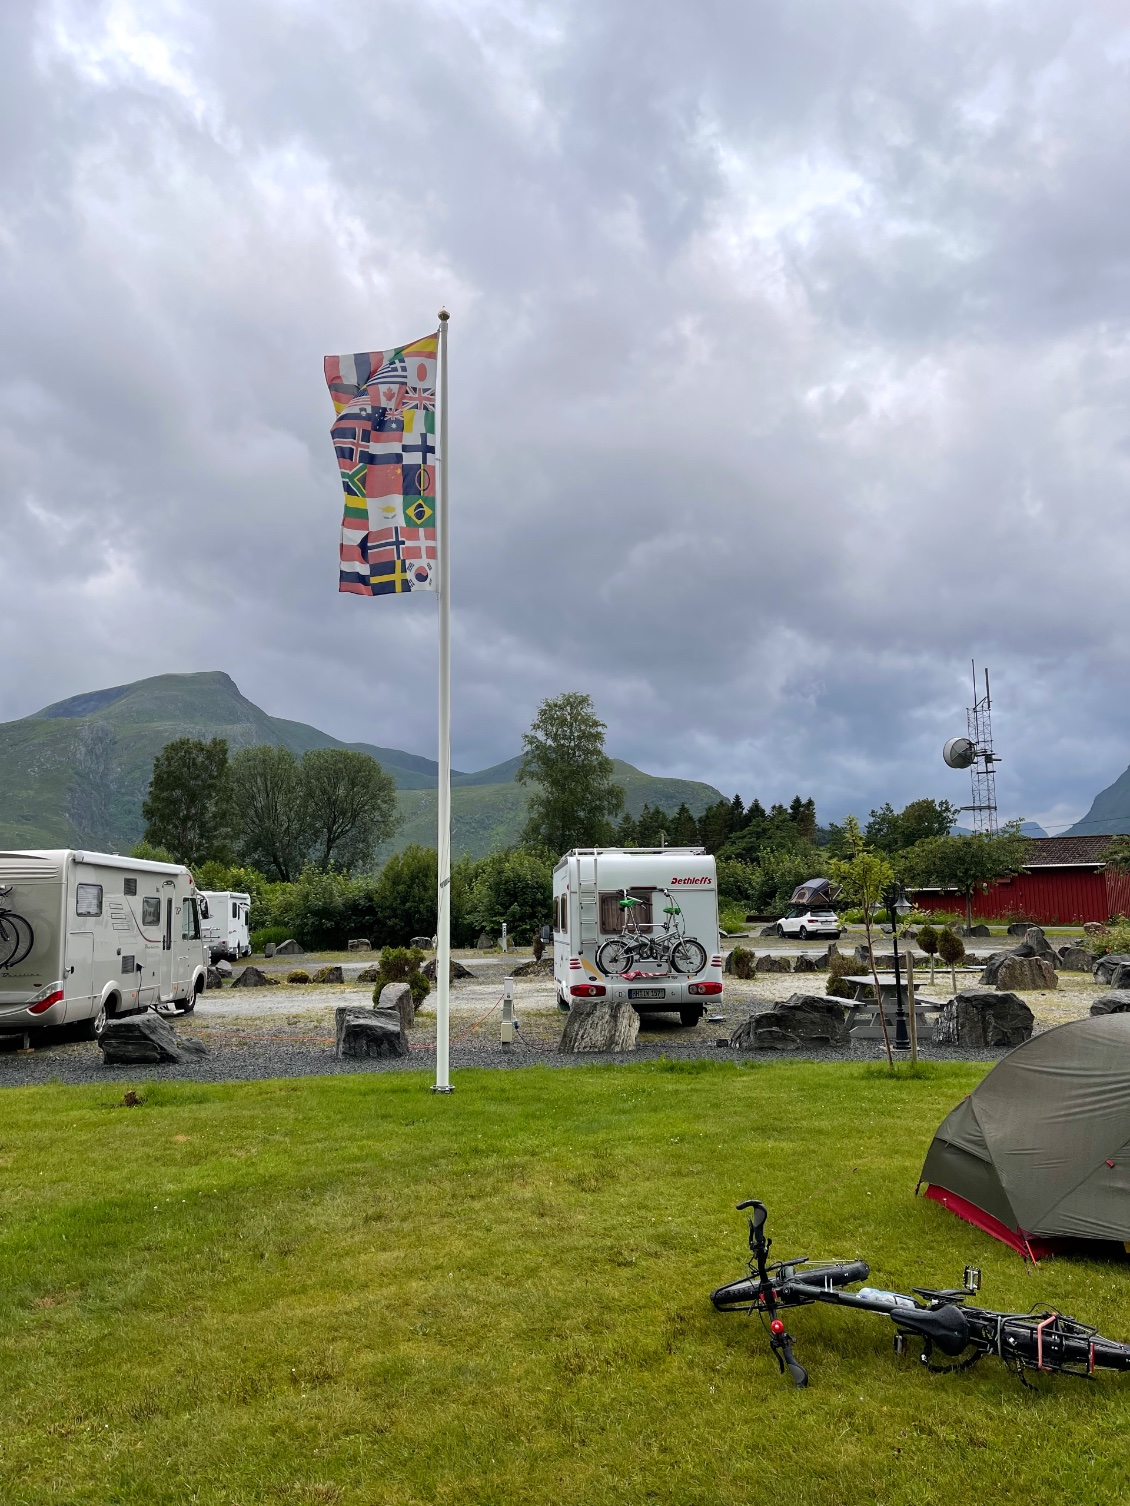 Le camping de Selje et son drapeau contenant tous les drapeaux européens. Quelle belle idée !